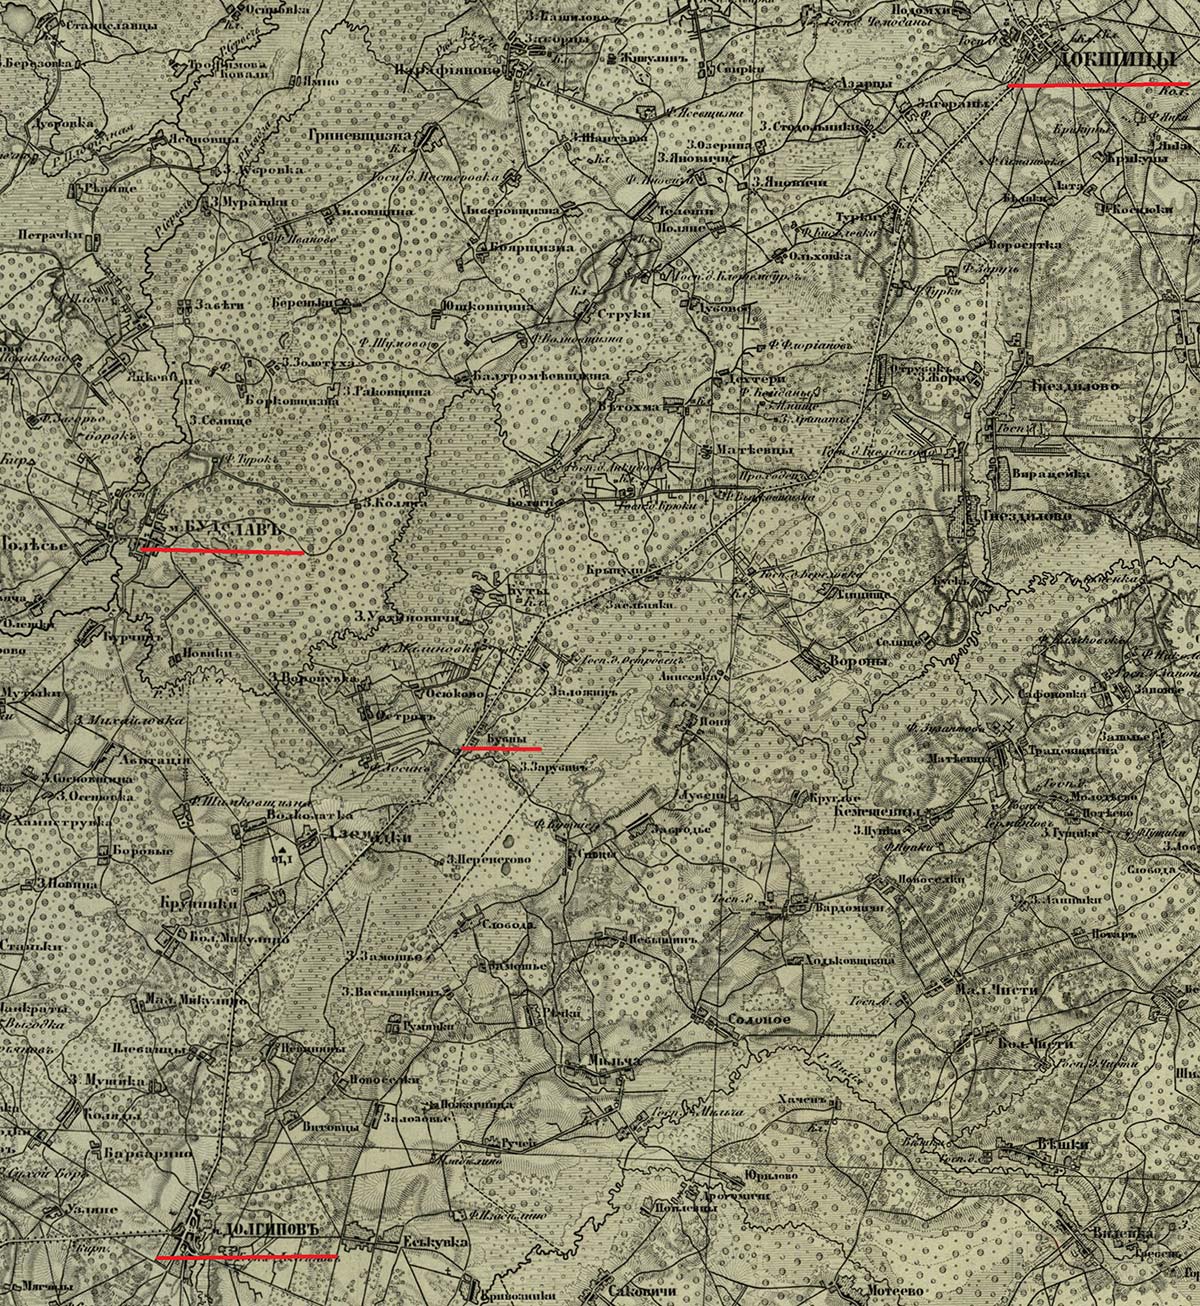 Фрагмент карты конца 19 века на которых отмечены населенные пункты Долгиново, Будслав, Докшицы и Бубны